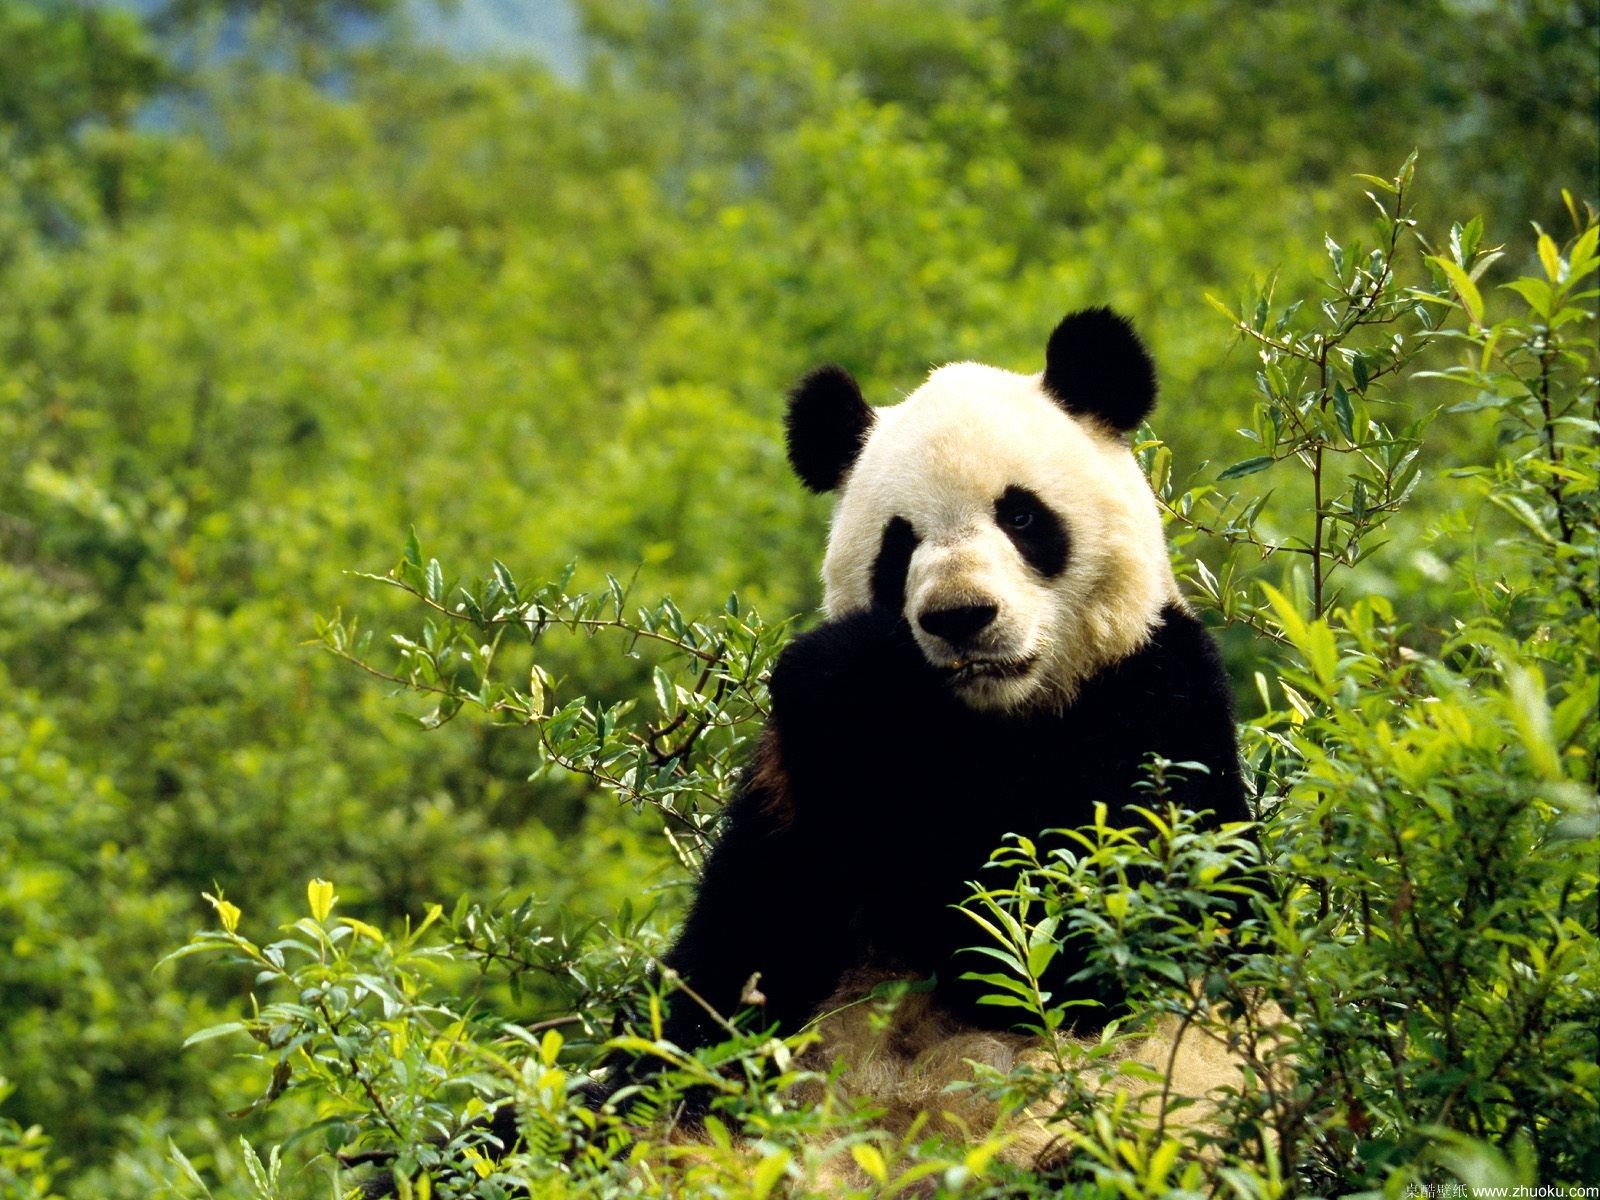 Free download Bamboo Wallpaper Bamboo Wallpaper 10 20 Panda in Bamboo Forest [1600x1200] for your Desktop, Mobile & Tablet. Explore Panda Wallpaper Borders. Panda Bear Wallpaper, Panda Bear Wallpaper Border, Pandas for Wallpaper